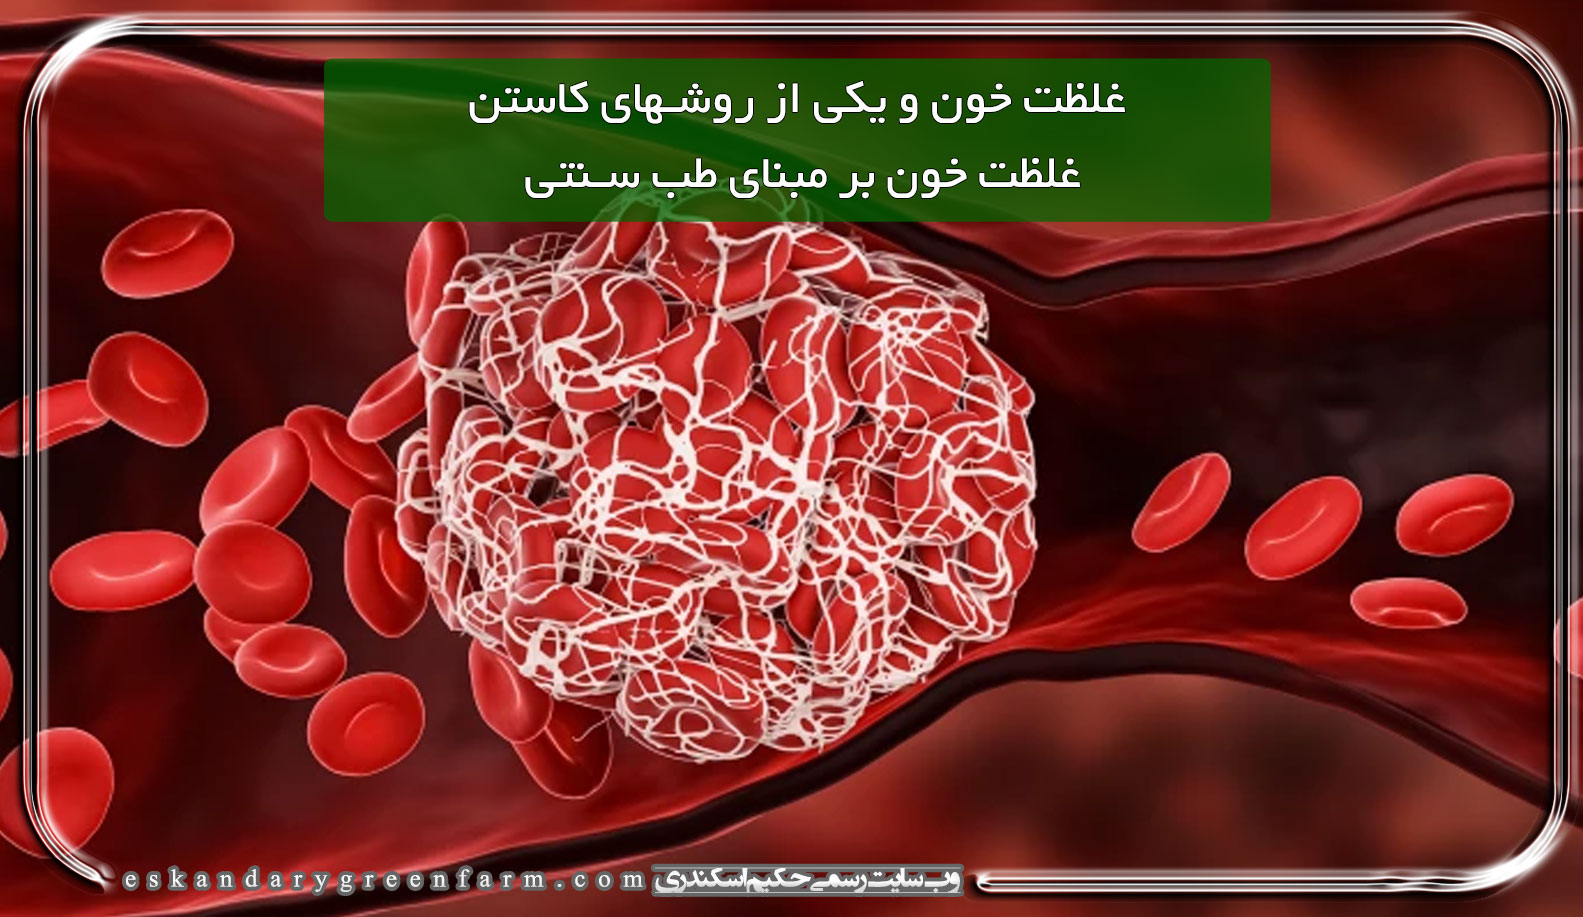 غلظت خون و یکی از روشهای کاستن غلظت خون بر مبنای طب سنتی